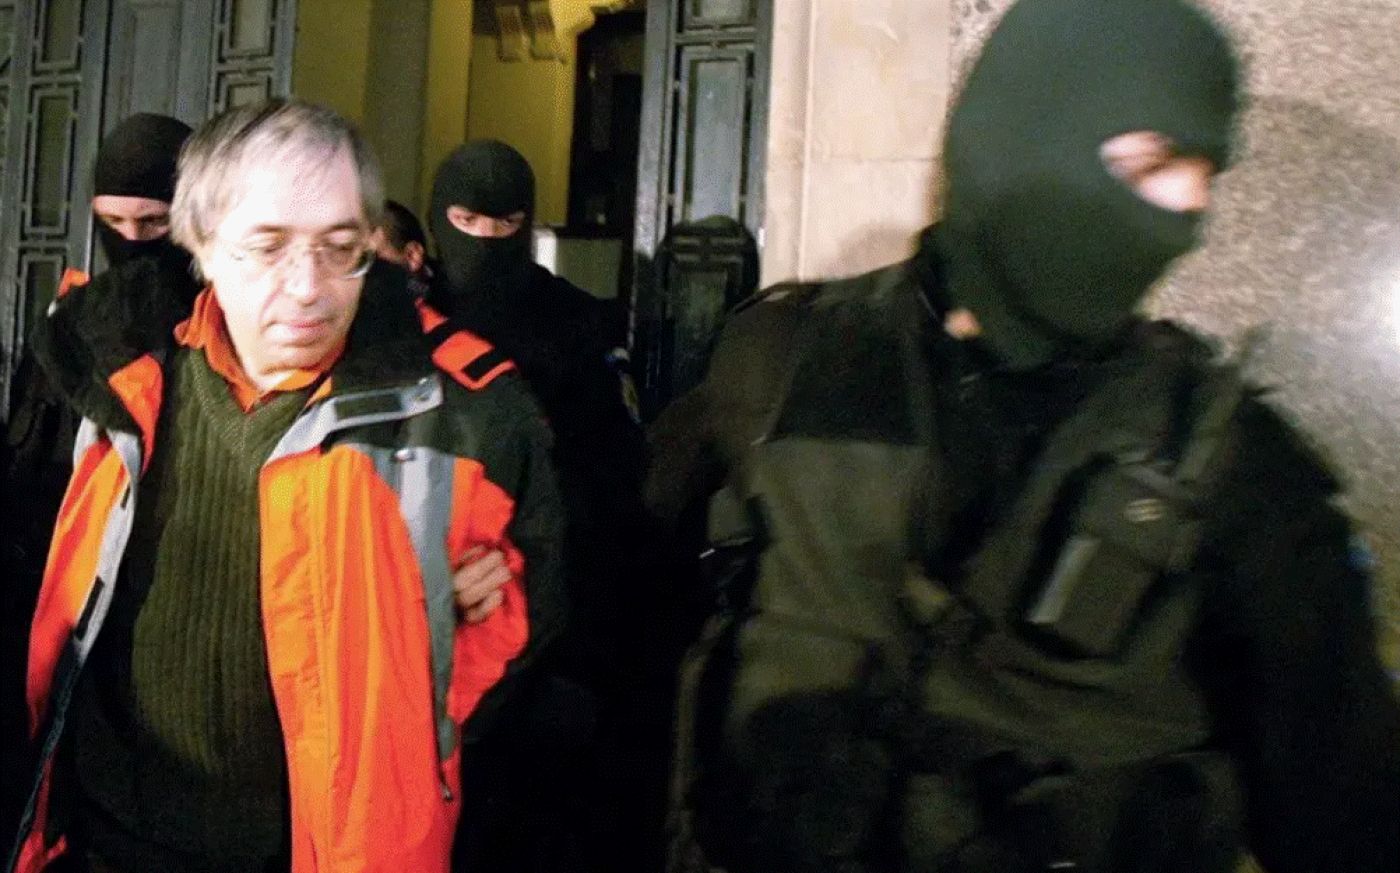 I s-a înfundat lui Gregorian Bivolaru. Polițiștii francezi l-au arestat pentru viol, răpire și trafic de persoane